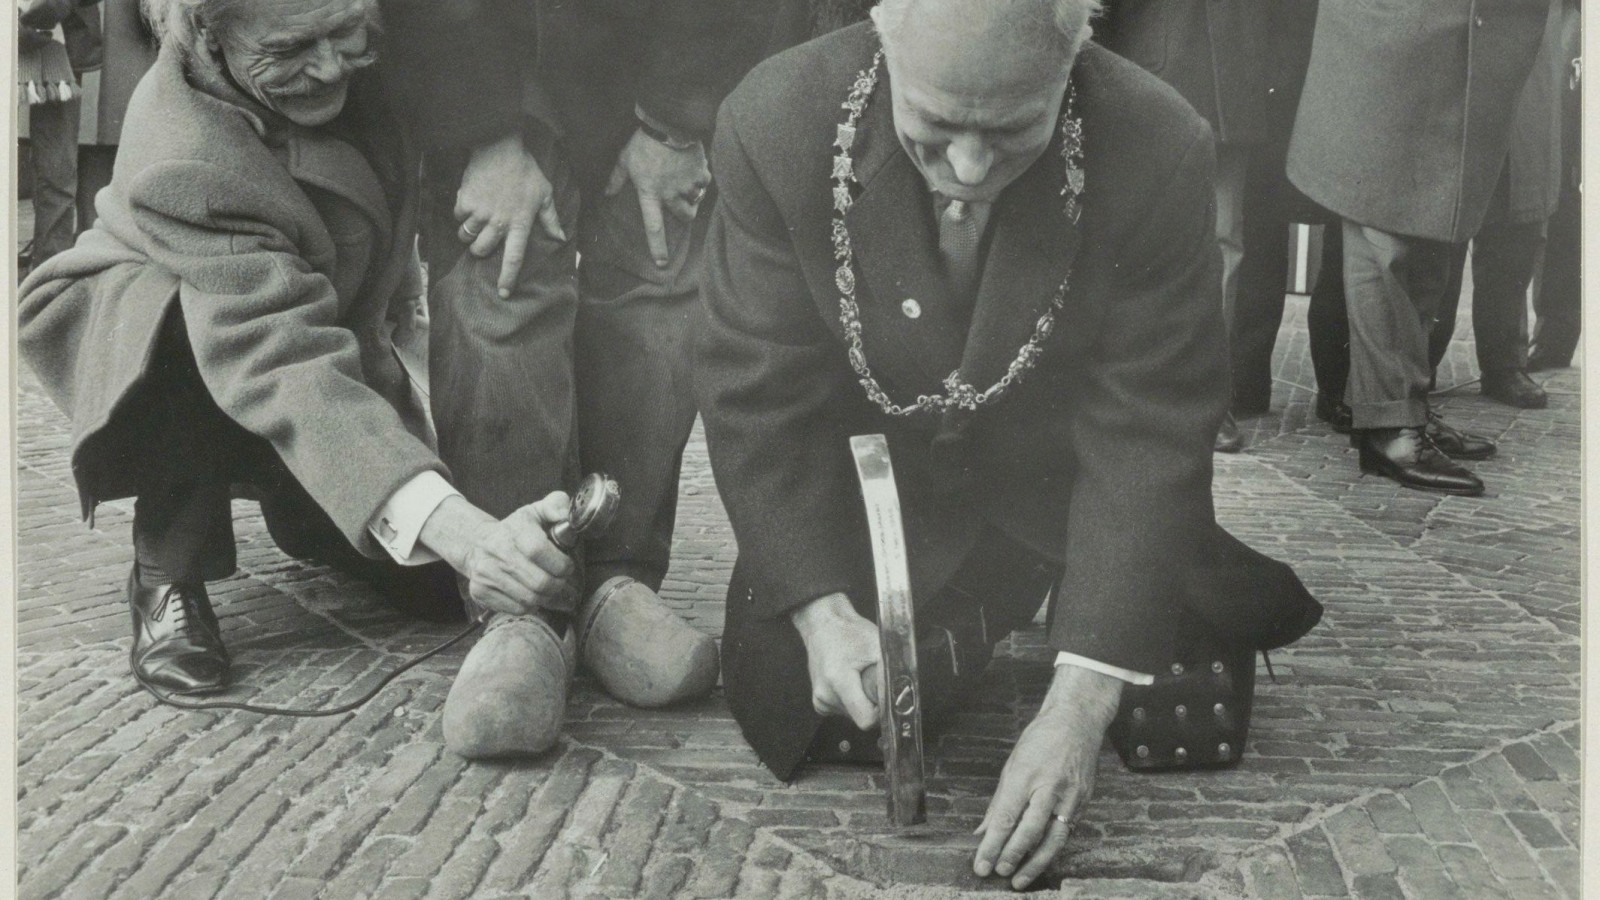 Burgemeester Cremers legt de laatste steen van de herinrichting van de Grote Markt als voetgangersdomein in 1966